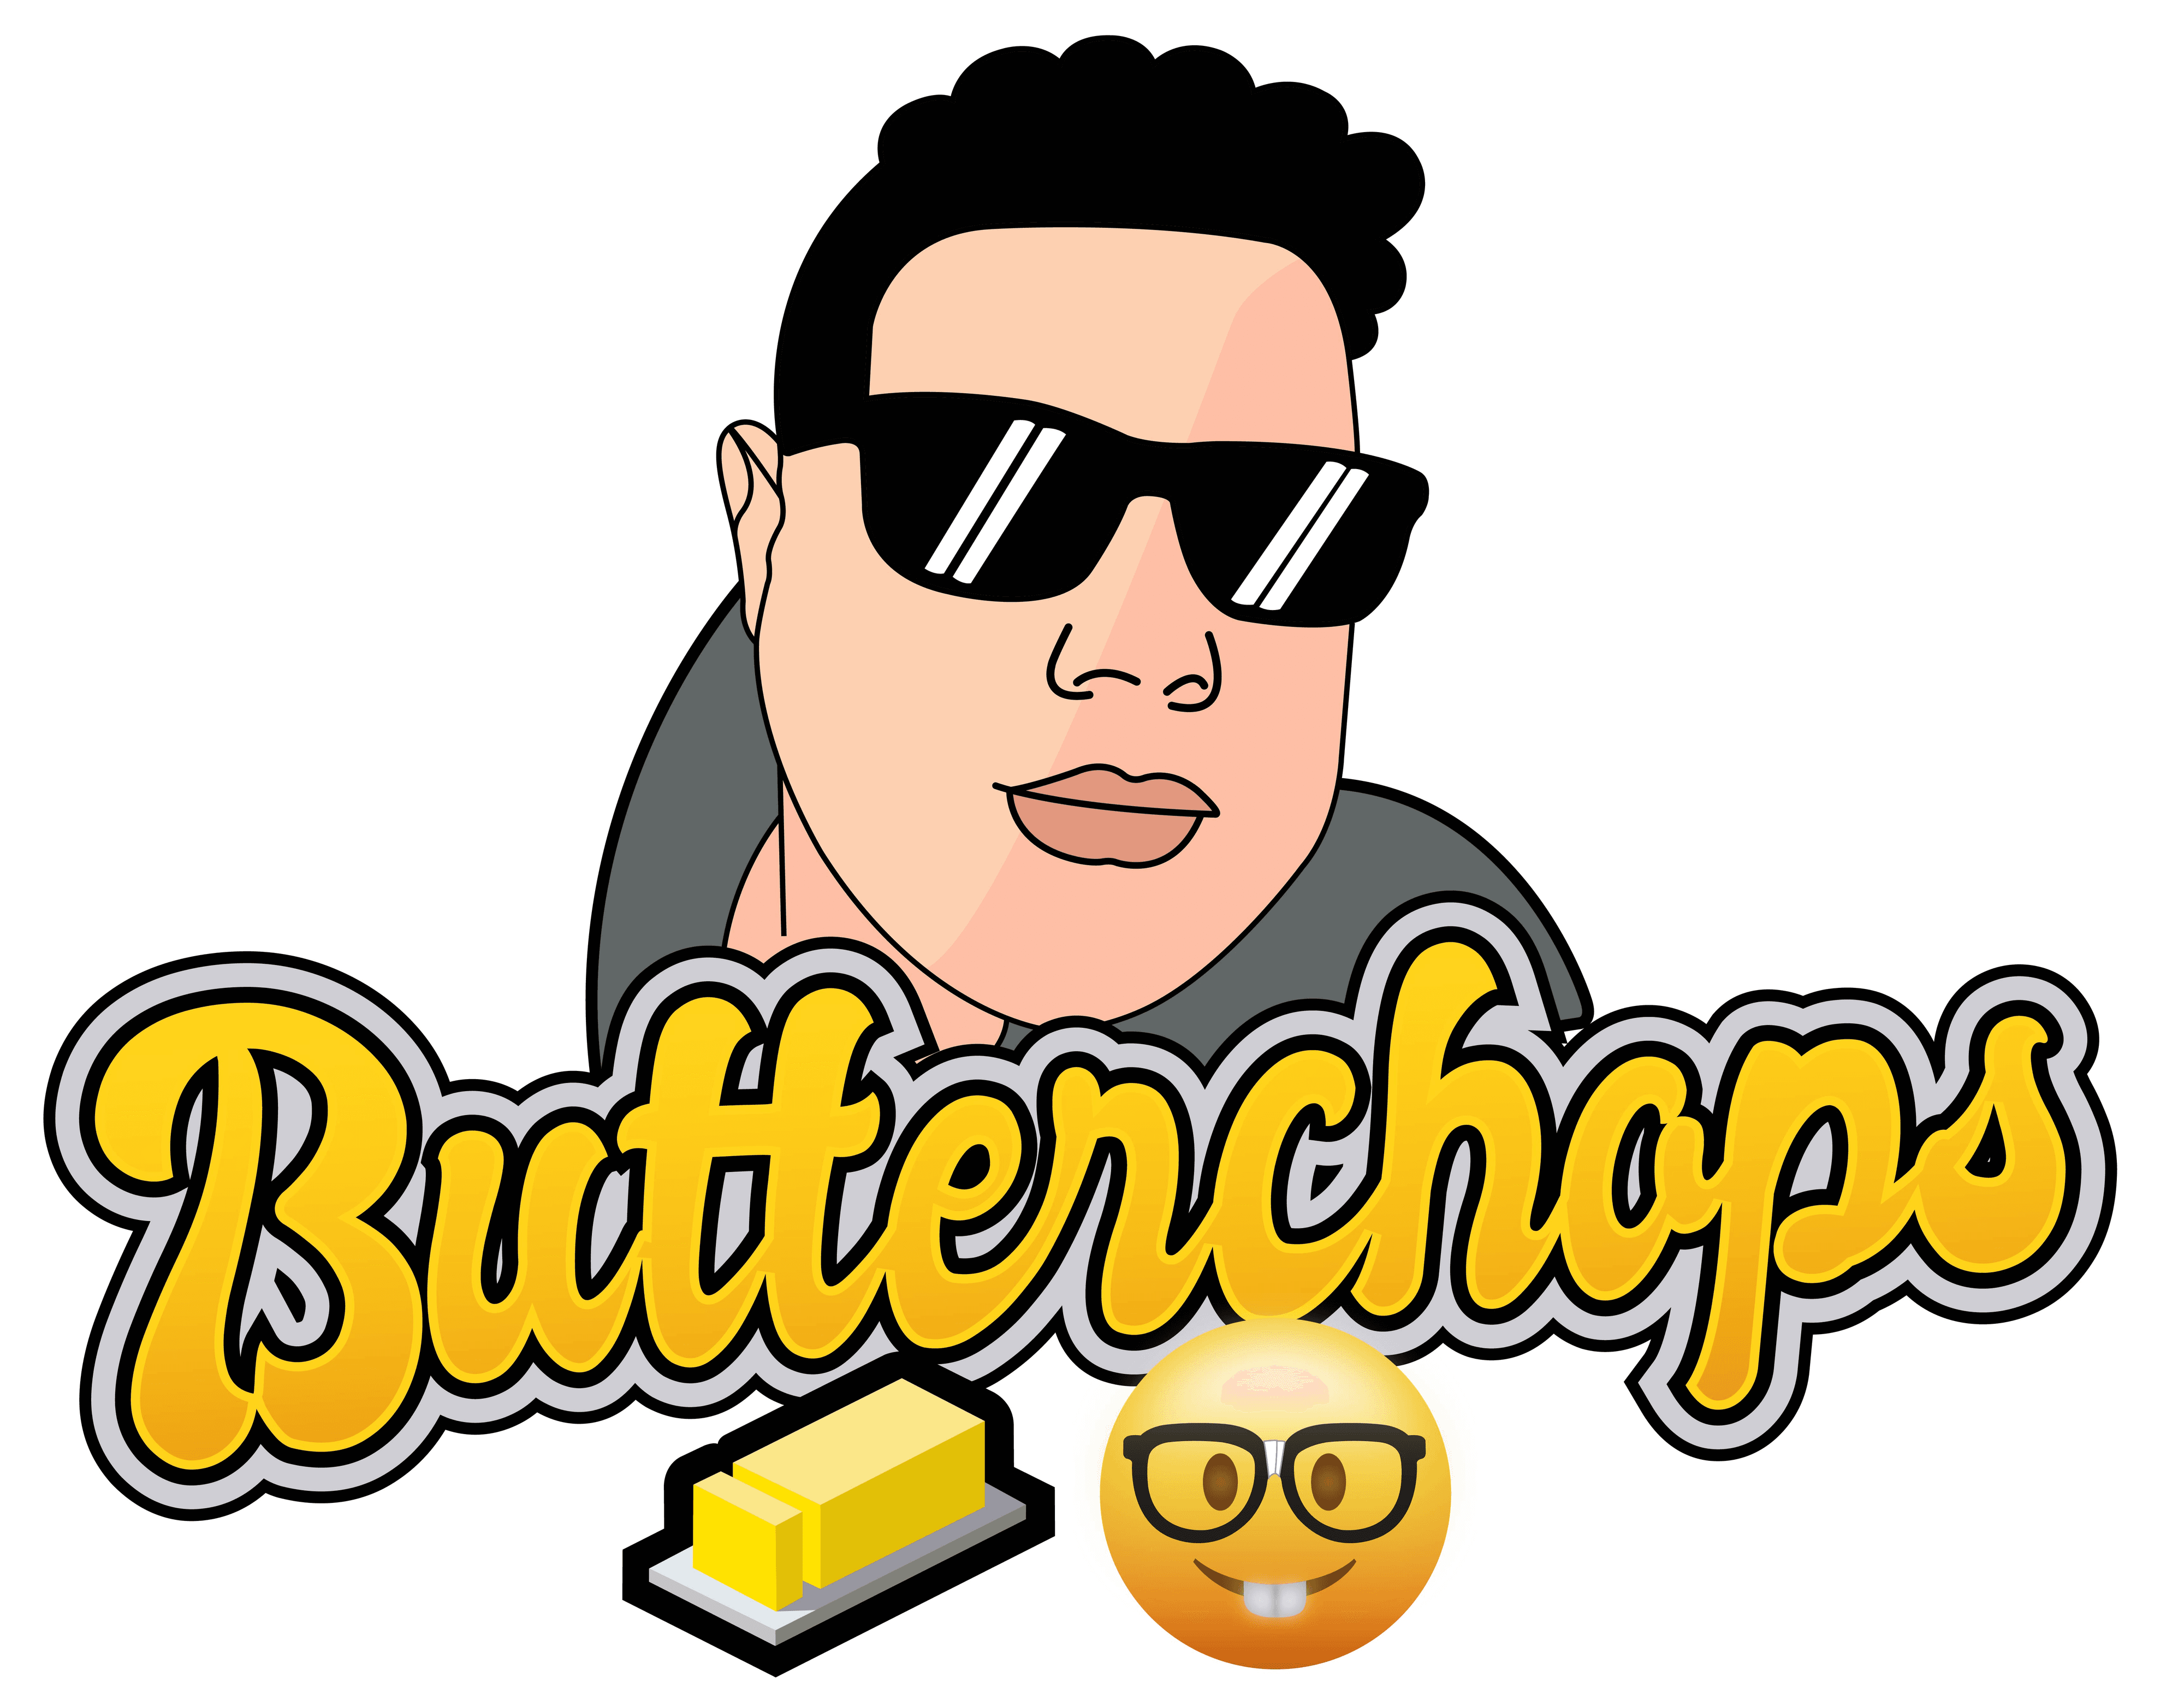 Butterchops_ バナー